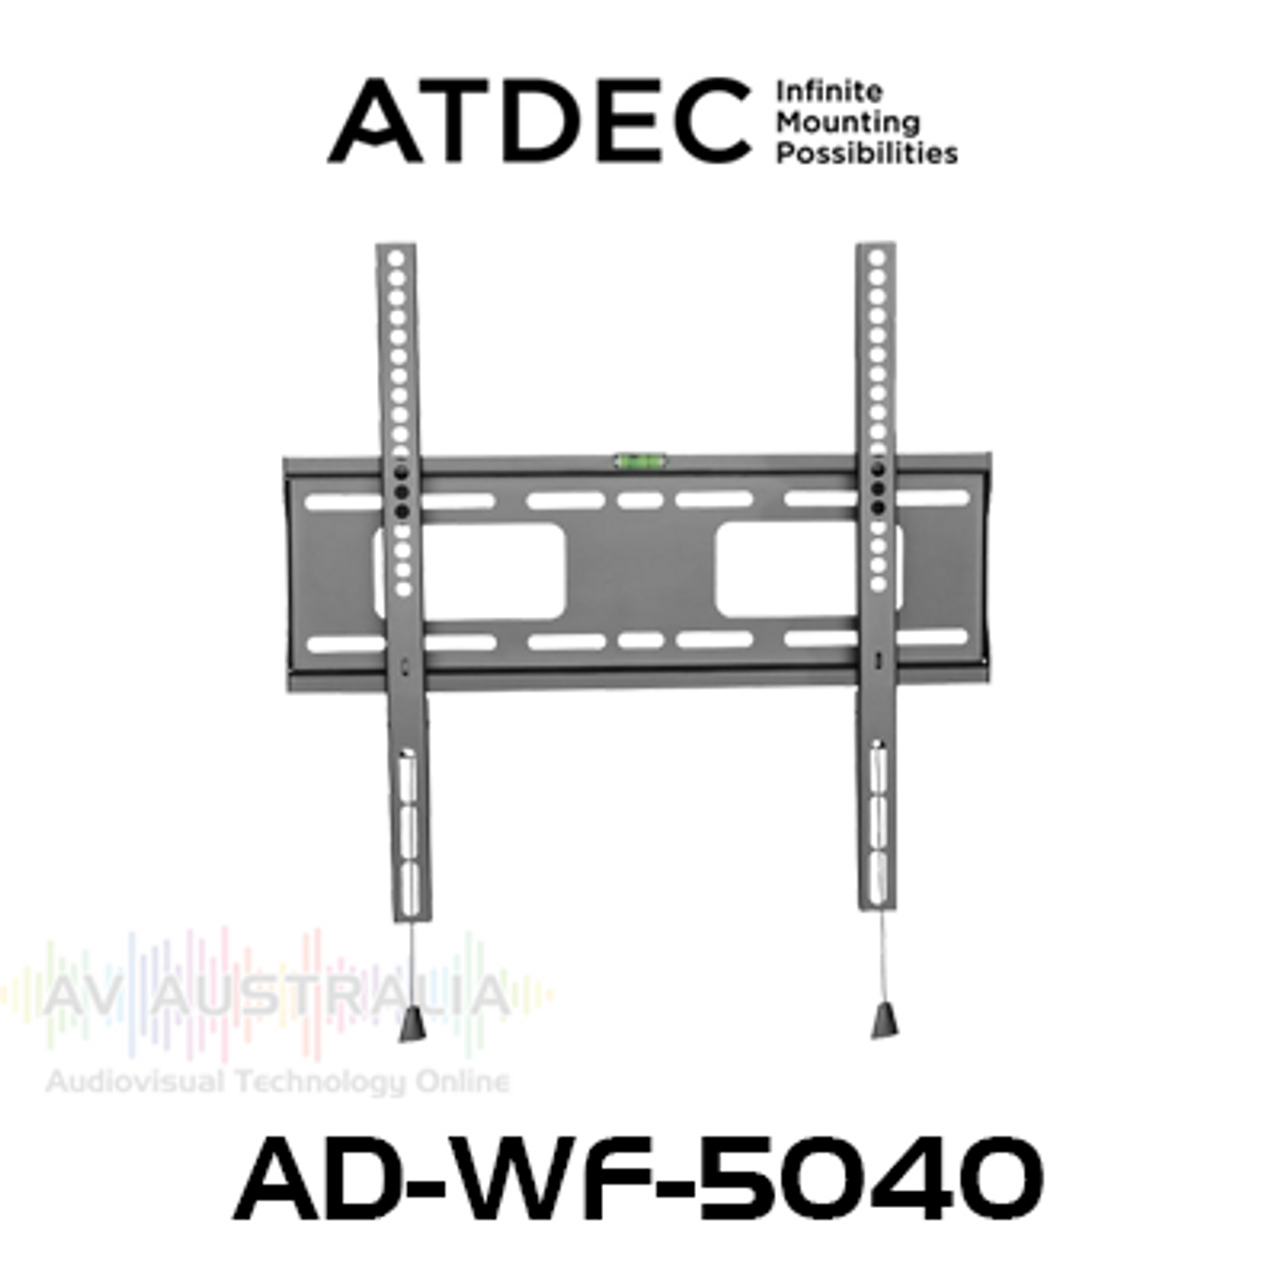 Atdec AD-WF-5040 VESA 400 Low Profile Fixed Display Wall Mount (50kg Max)